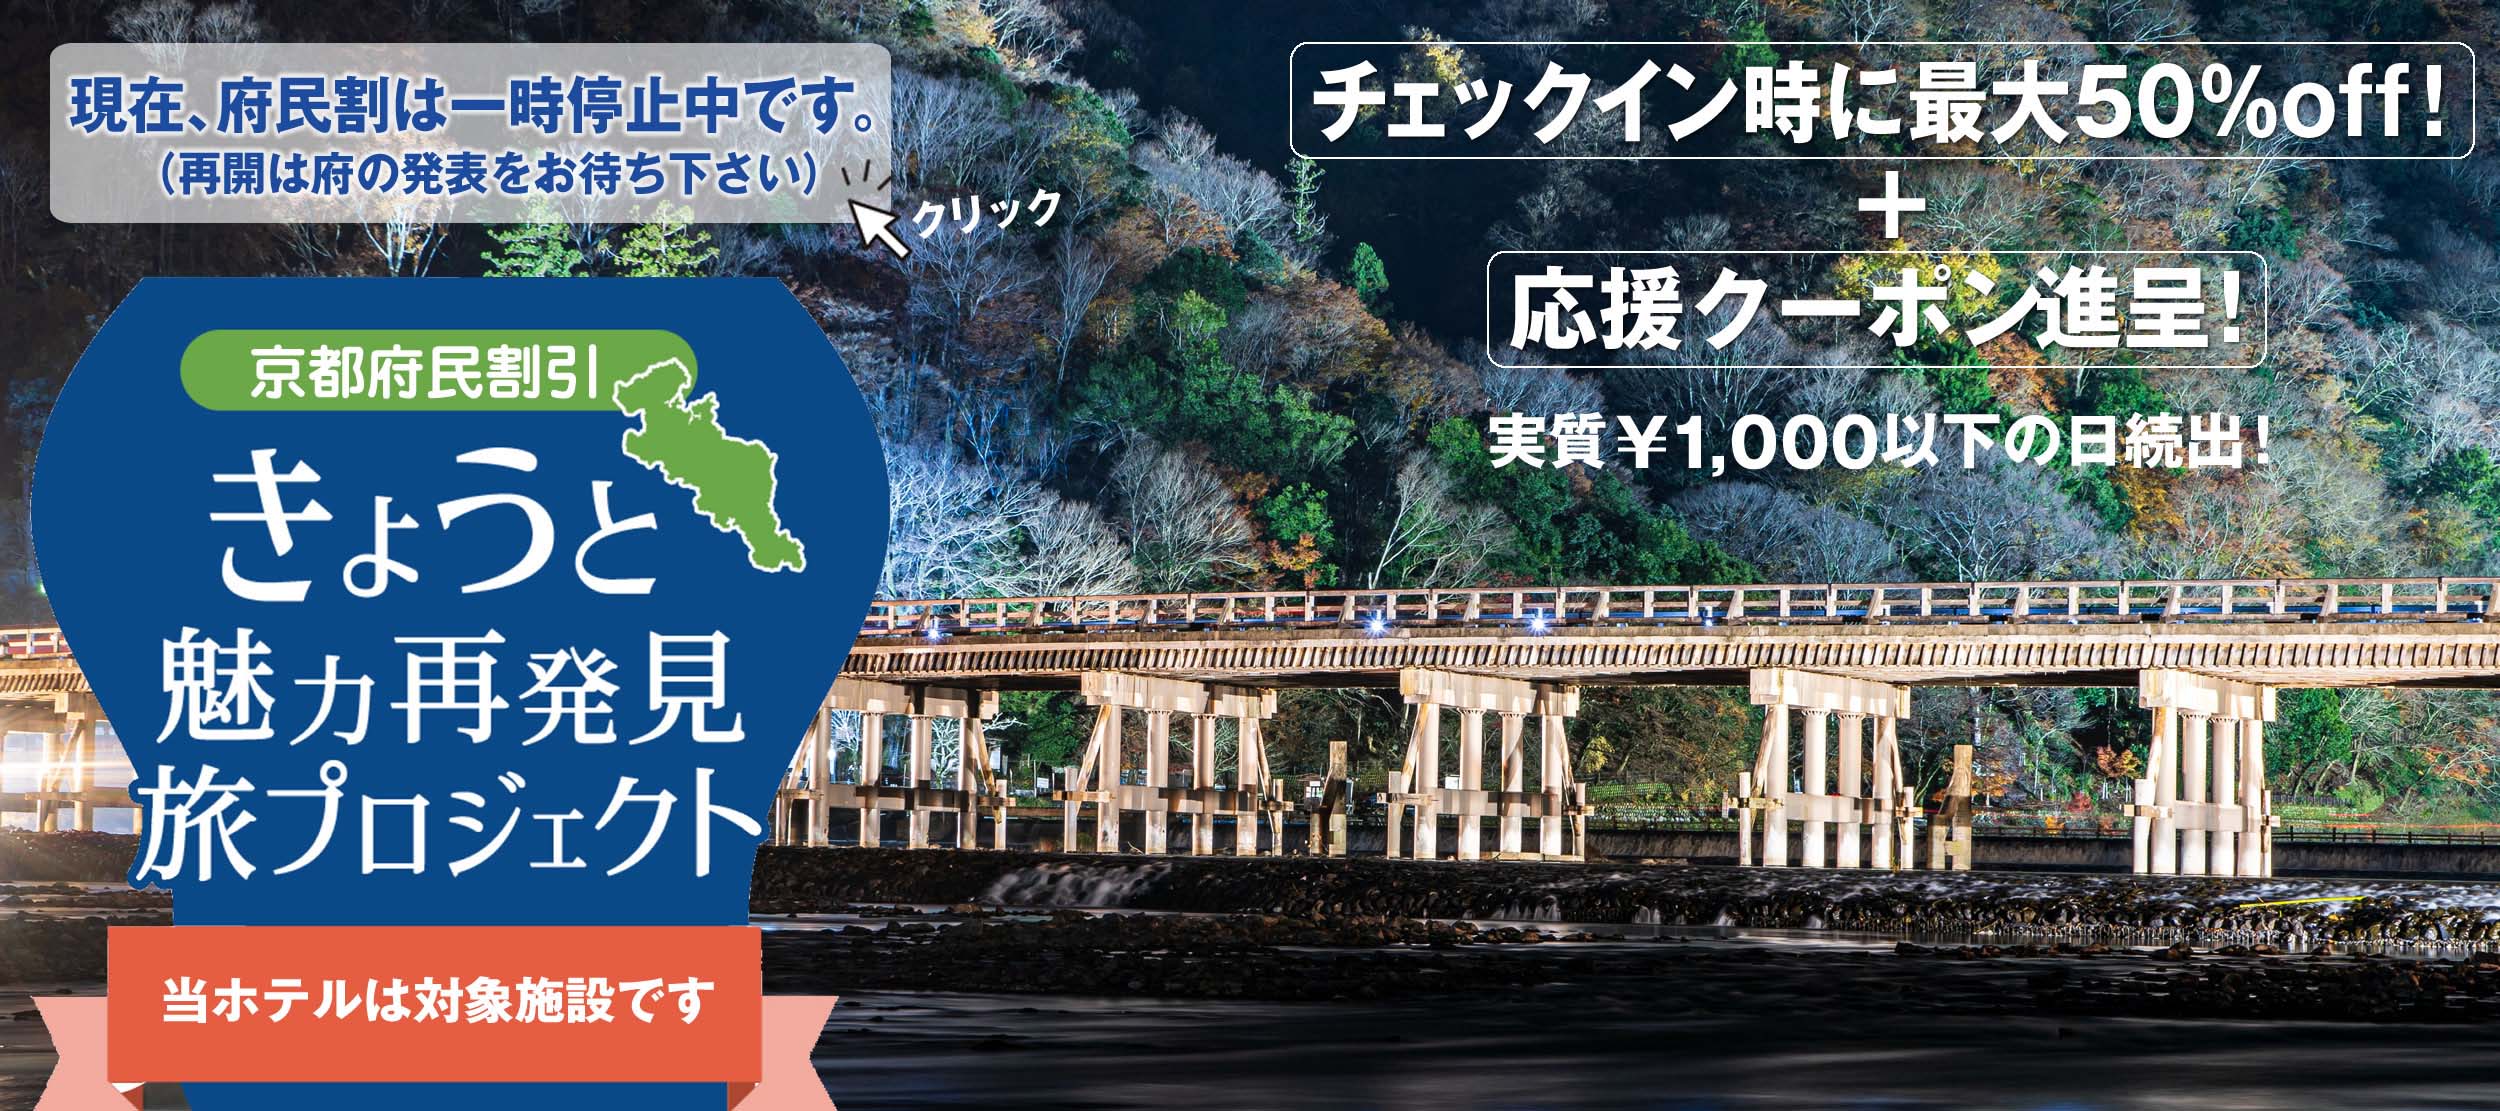 京都府民割対象のホテル「きょうと魅力再発見旅プロジェクト」